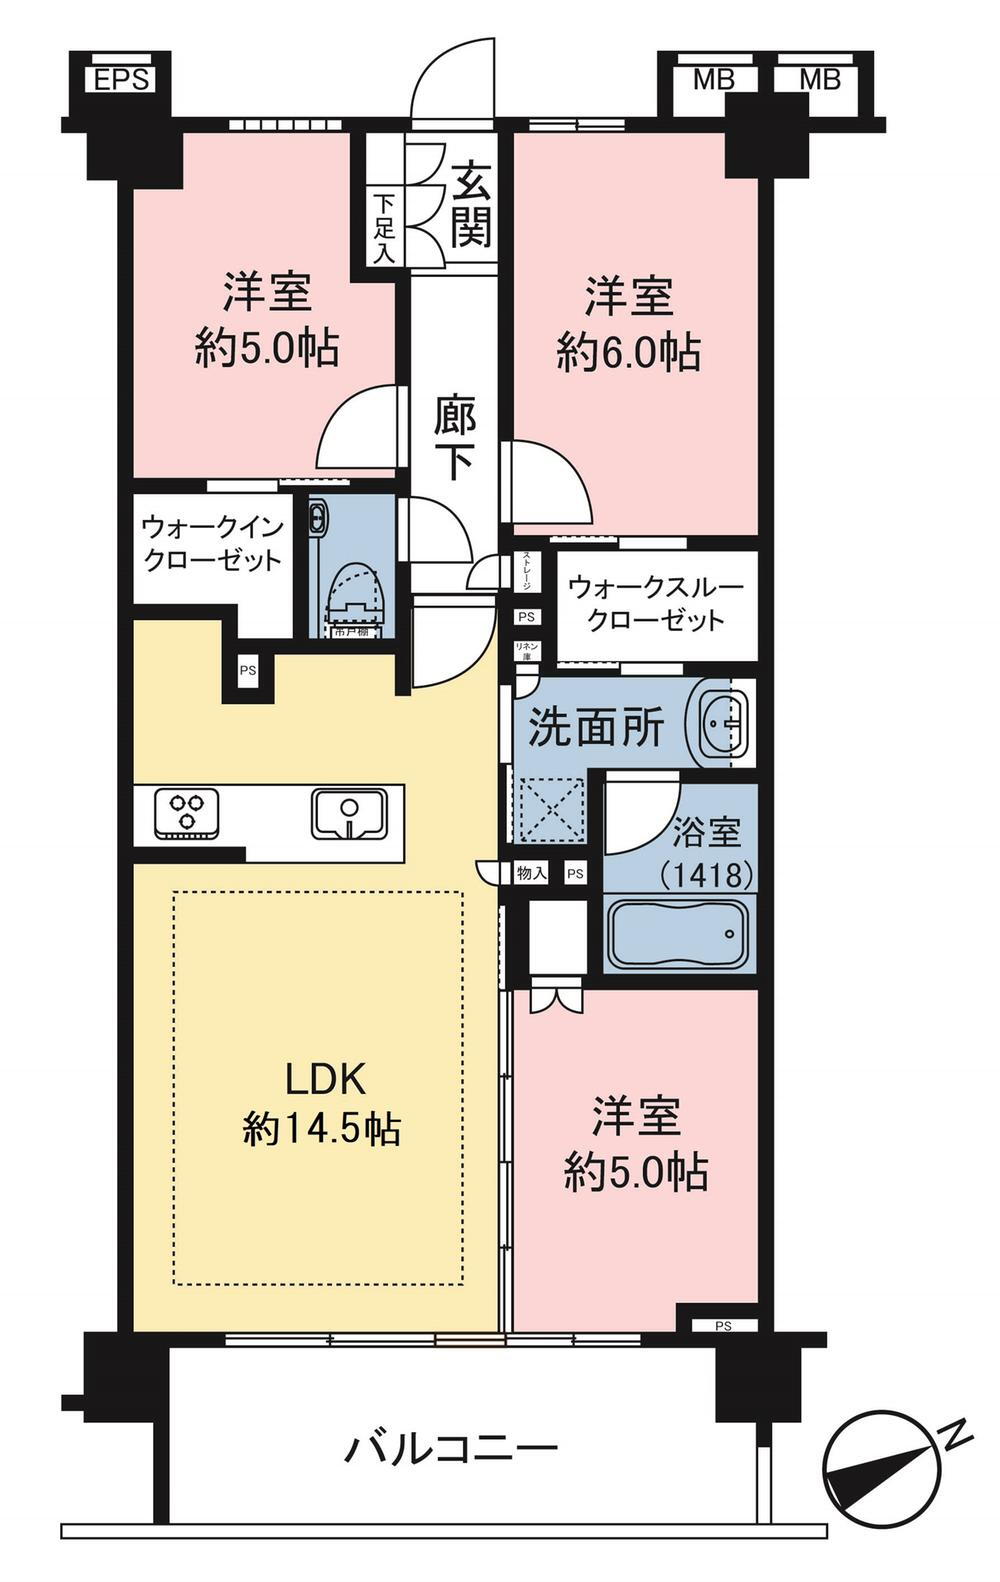 クリオ横濱本牧 3LDK、価格4800万円、専有面積68.4m<sup>2</sup>、バルコニー面積9.67m<sup>2</sup> WIC・WTC付きの収納豊富な3LDK。洋室の引き戸を開ければ広々としたリビングとしてお使い頂けます。